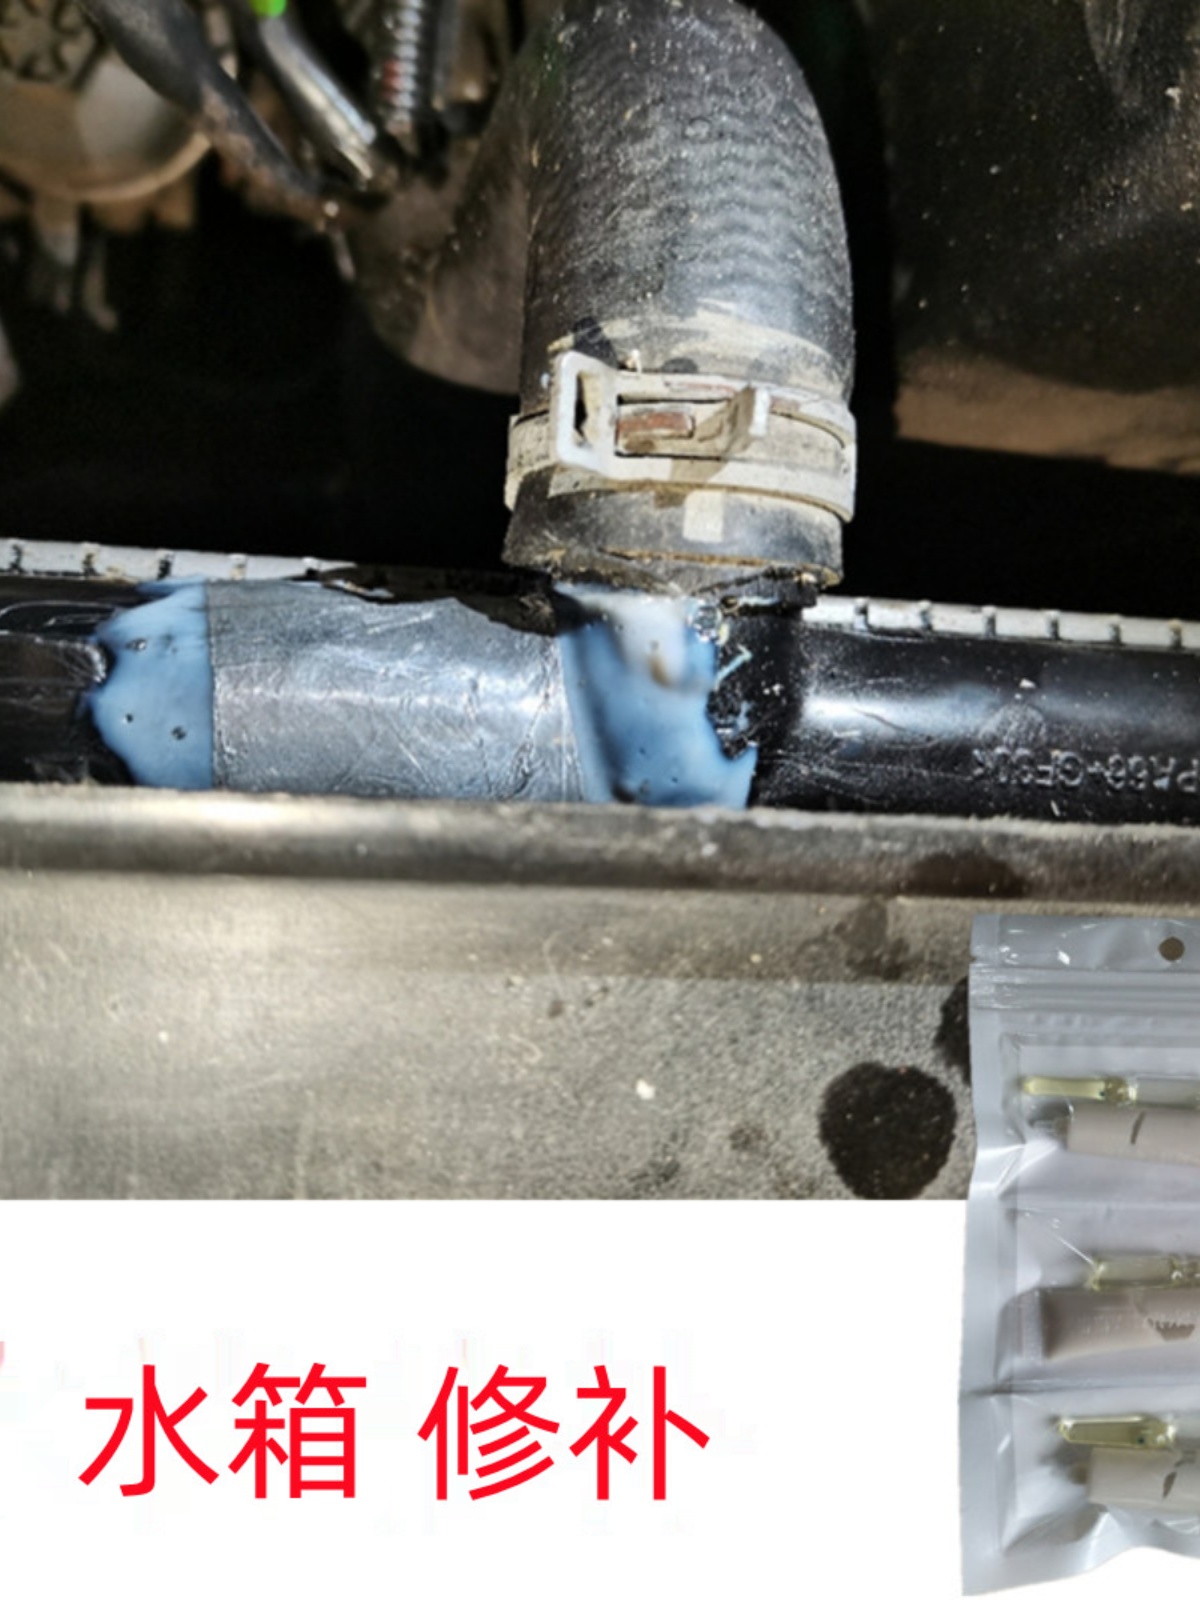 汽车散热器水箱塑料裂了粘接修补专用胶水发动机防冻液箱补漏水胶-图1